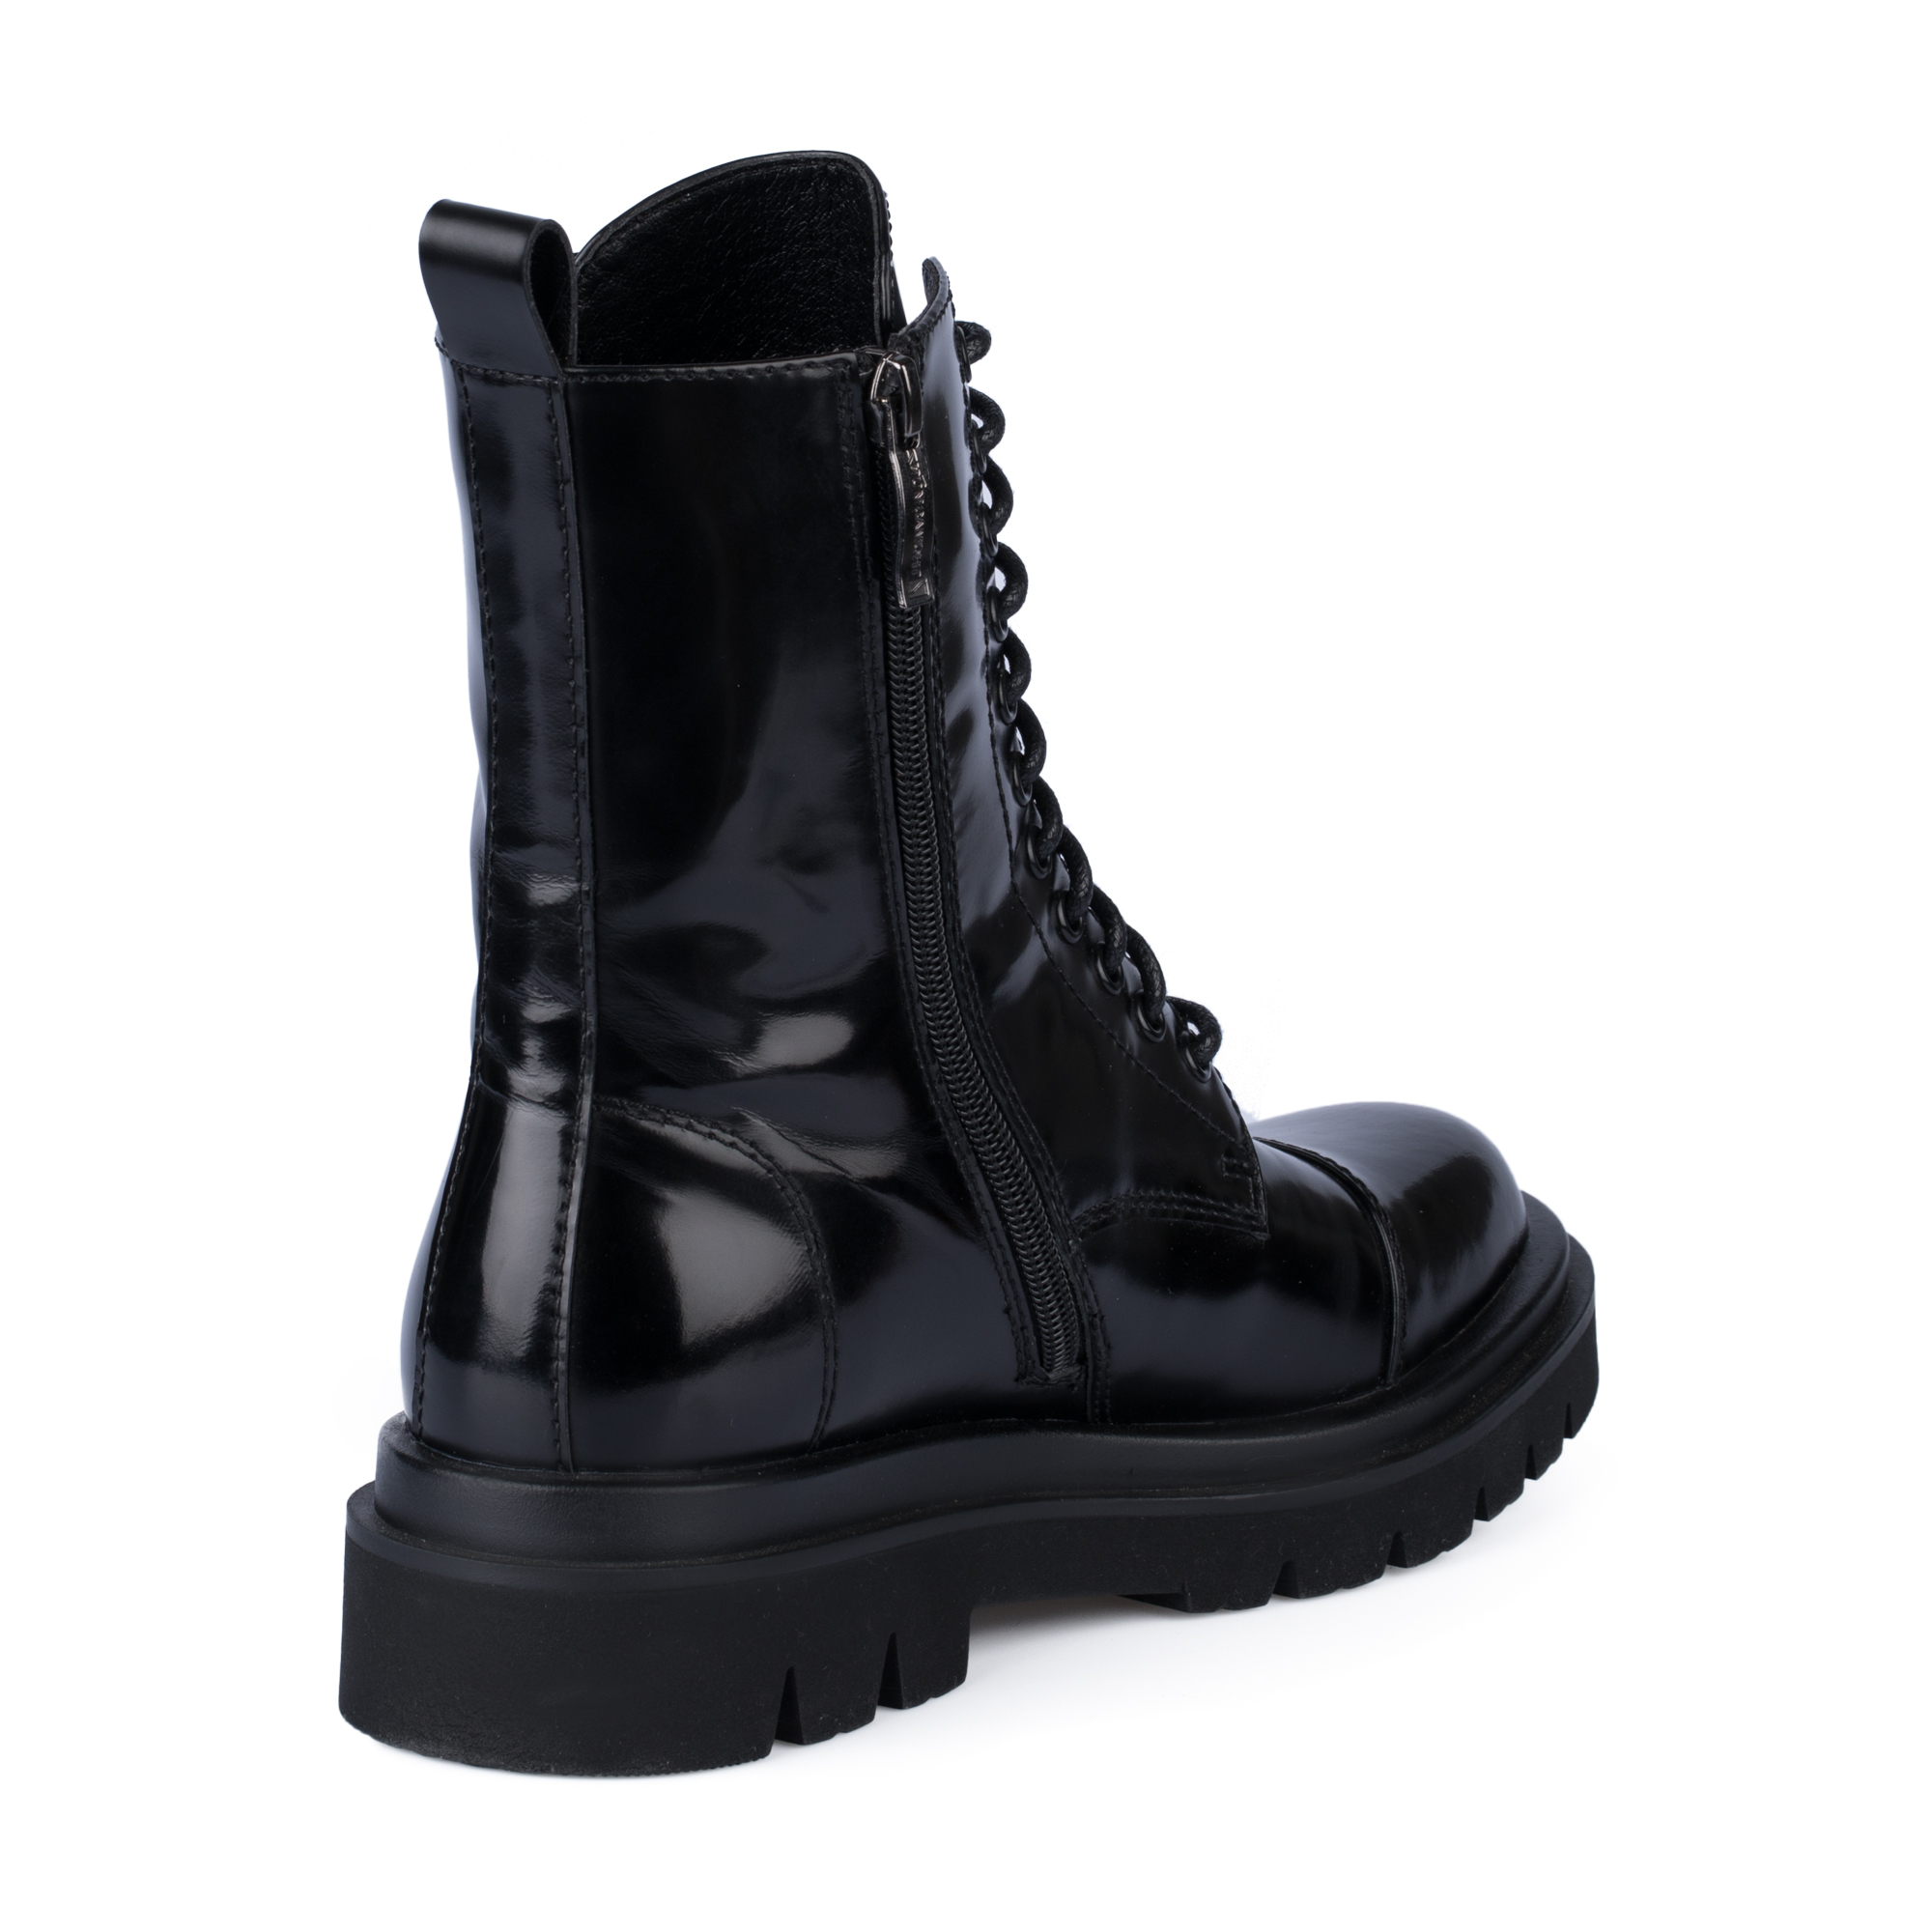 Ботинки Thomas Munz 233-895A-2602, цвет черный, размер 40 - фото 3